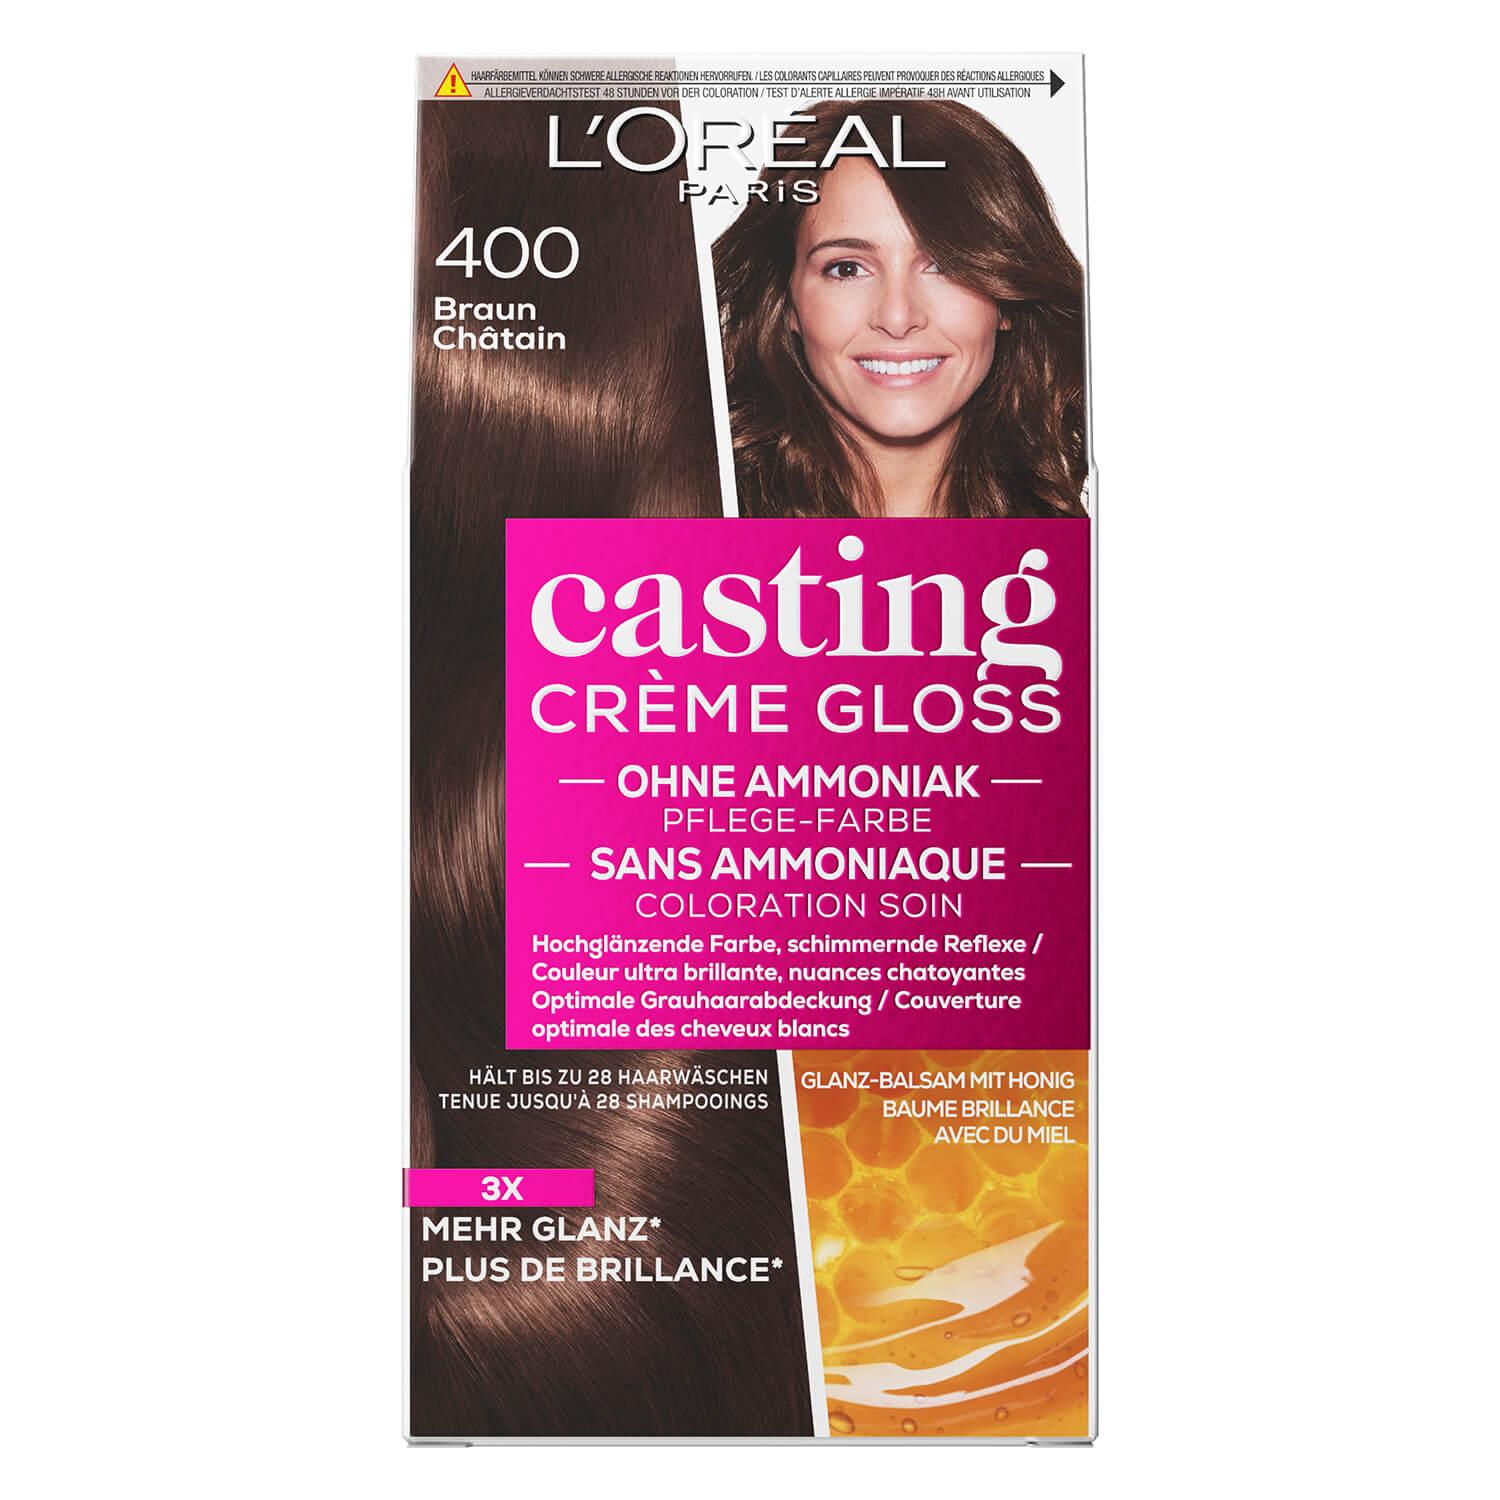 LOréal Casting - Crème Gloss 400 Braun